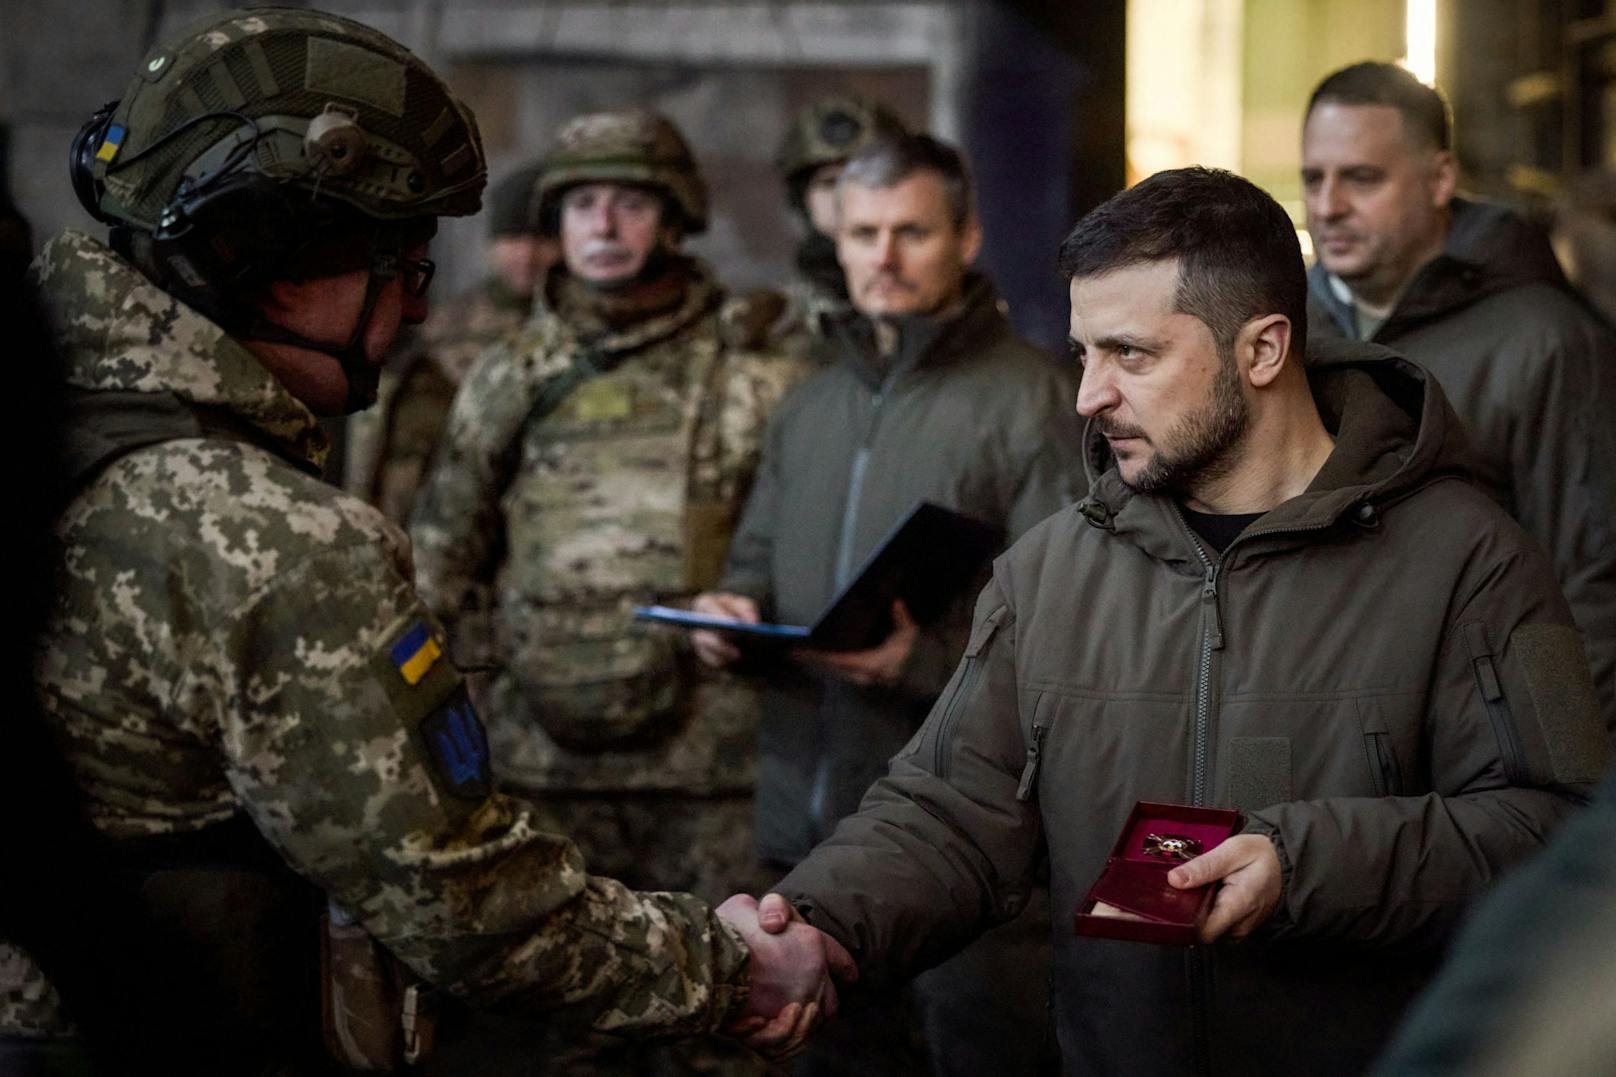 Kiew bereitet neue Truppen für Fronteinsatz vor